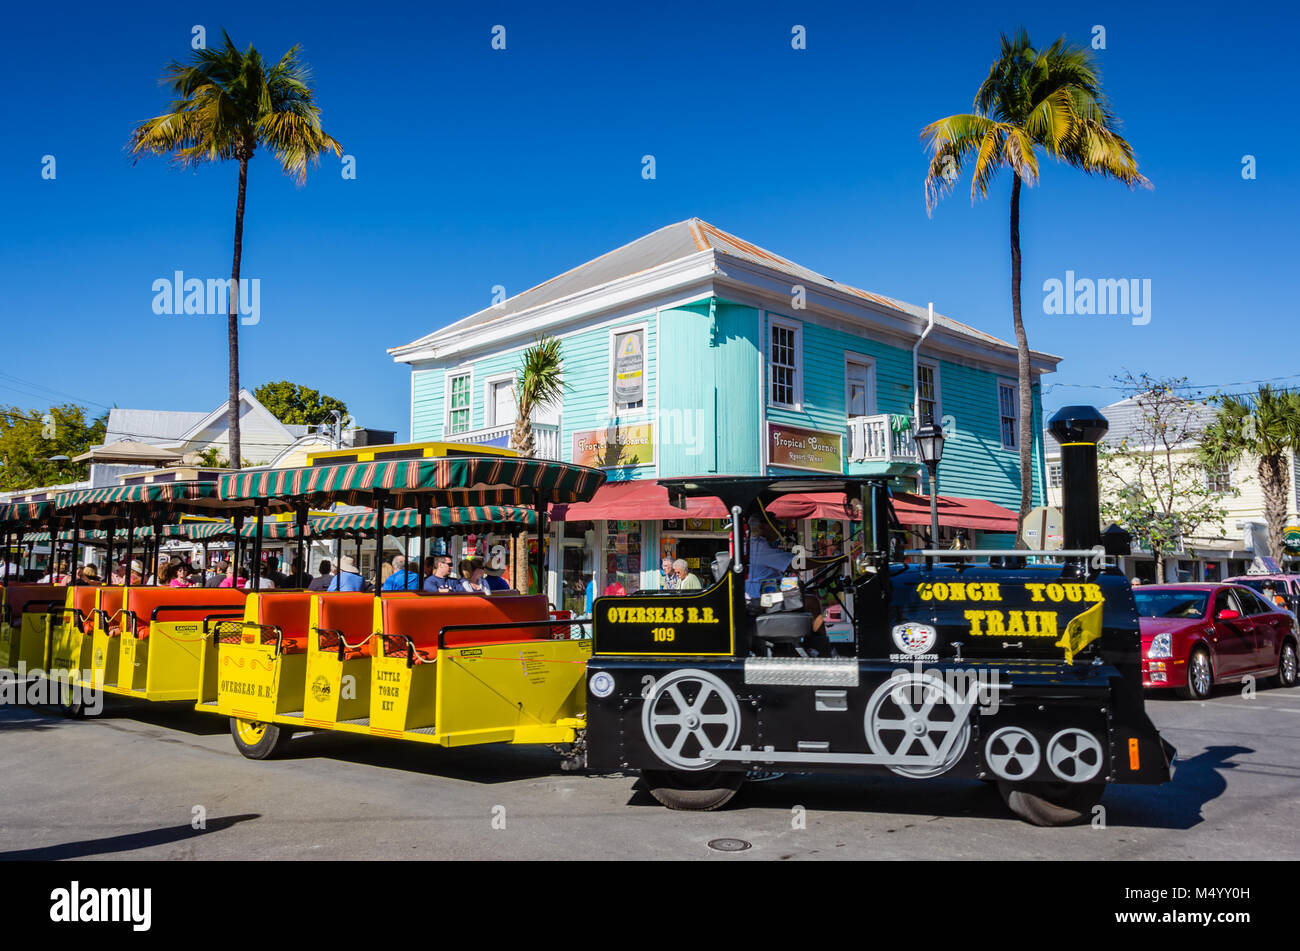 Tours de Key West, Florida, a bordo de la colorida Conch Tour Train visto aquí doblando la esquina de la Calle Verde. Foto de stock